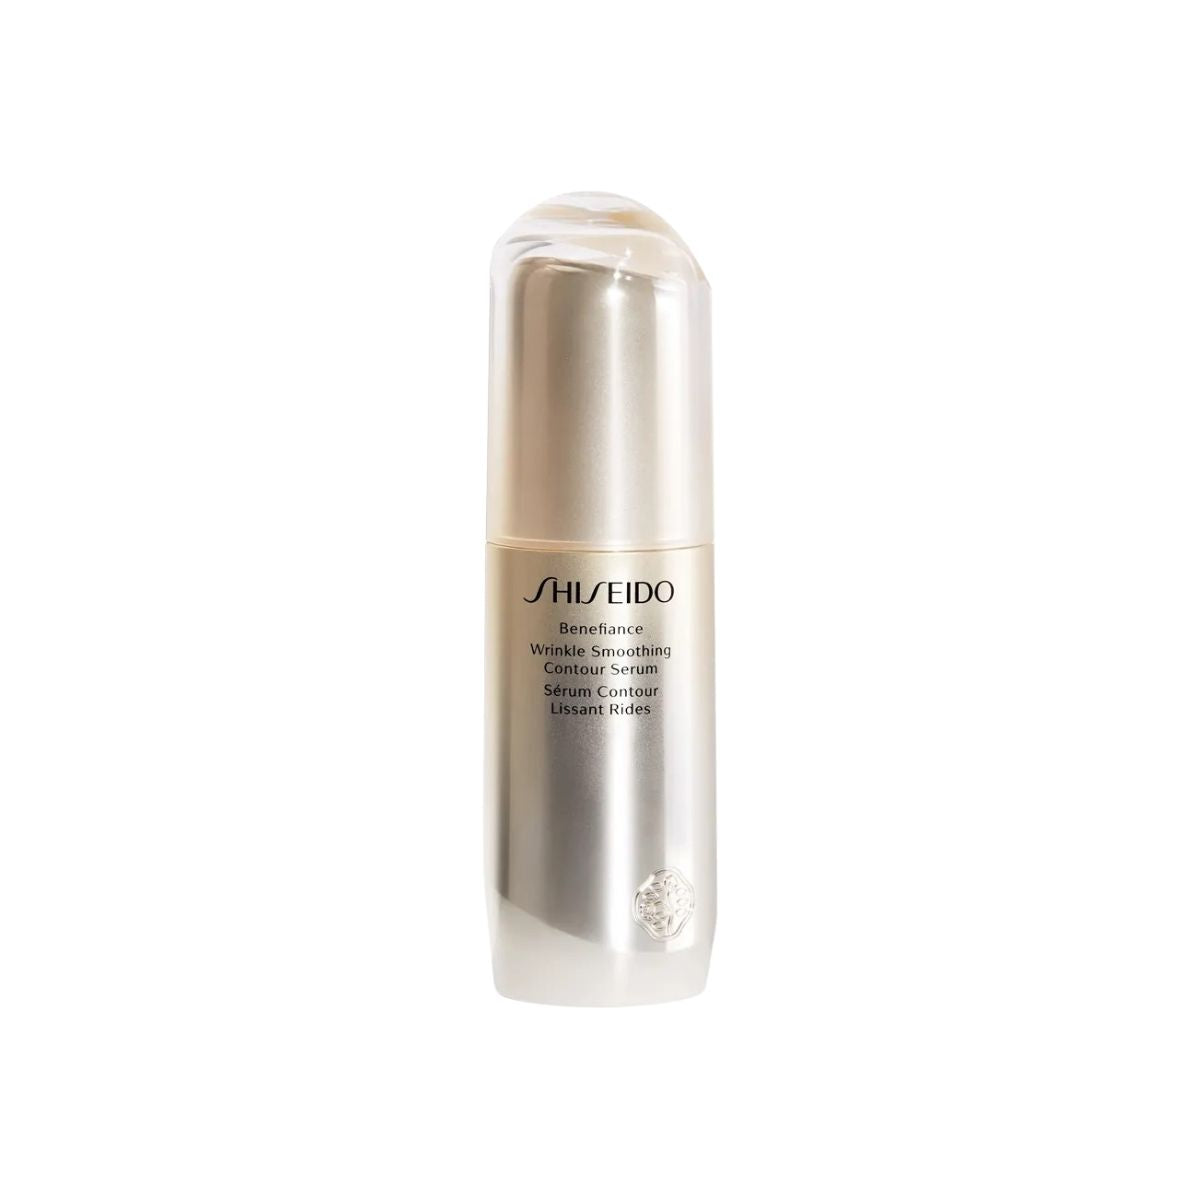 Shiseido Benefiance Wrinkle Smoothing Contour Serum 30ml 